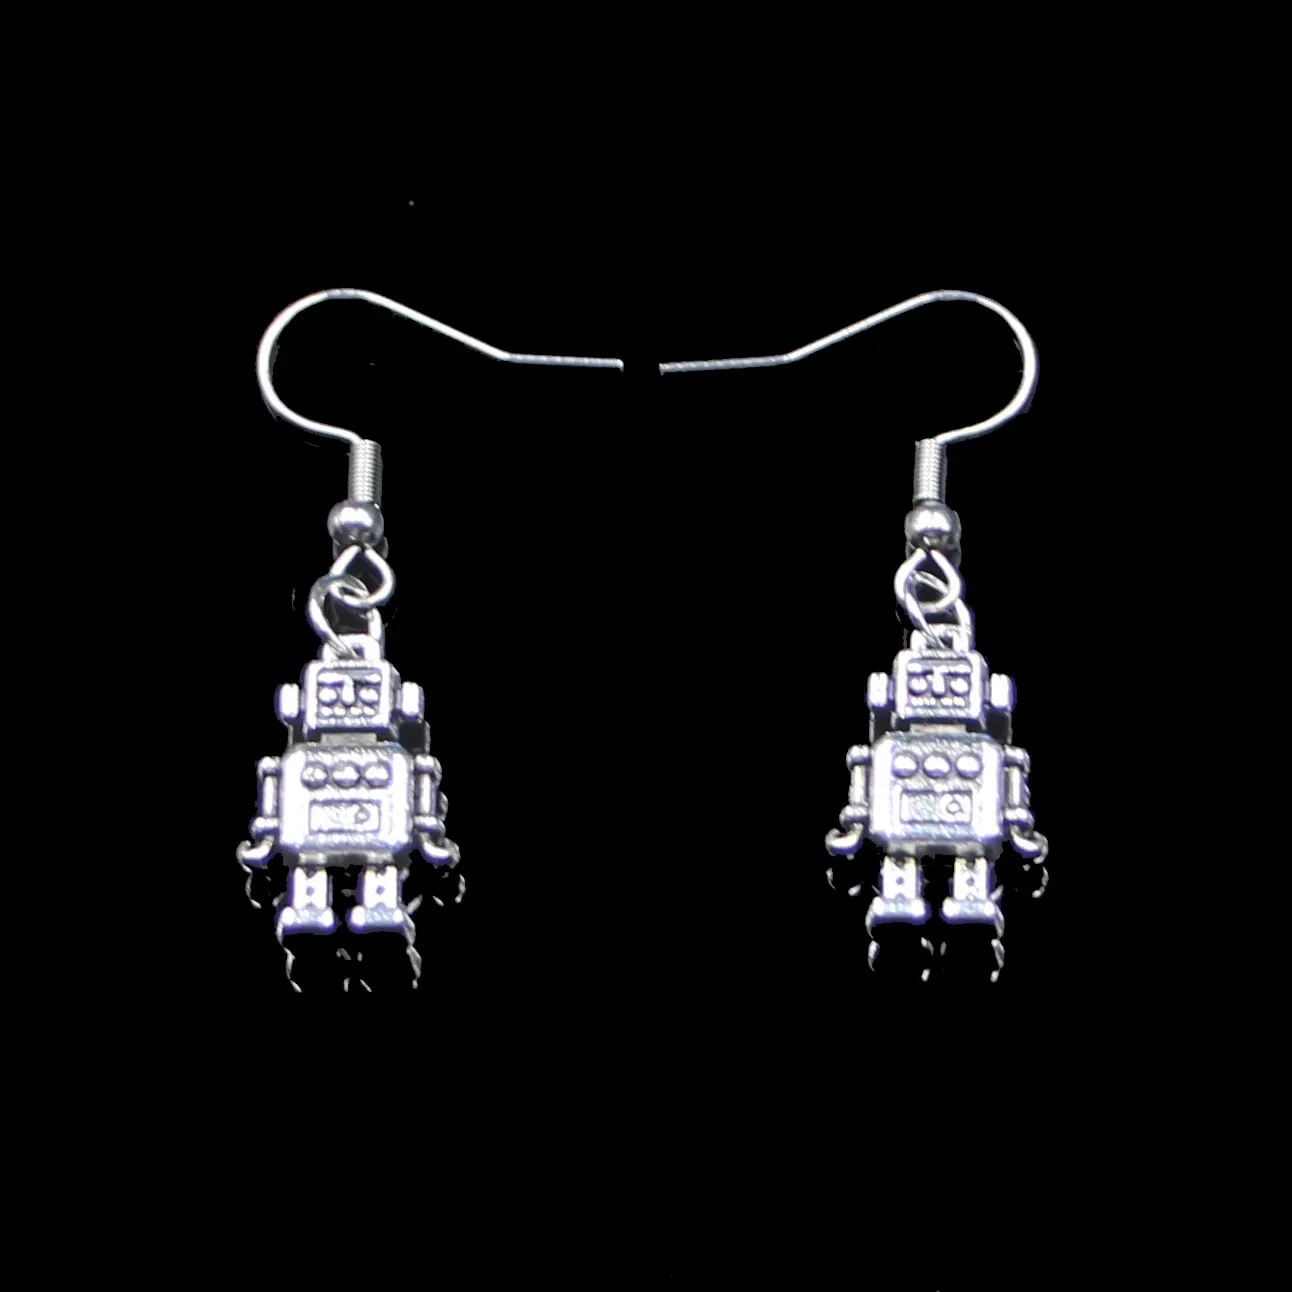 Neue Mode handgefertigt 18 * 11 * 4 mm Mechaniker Roboter Ohrringe Edelstahl Ohrbügel Retro kleines Objekt Schmuck einfaches Design für Frauen Mädchen Geschenke